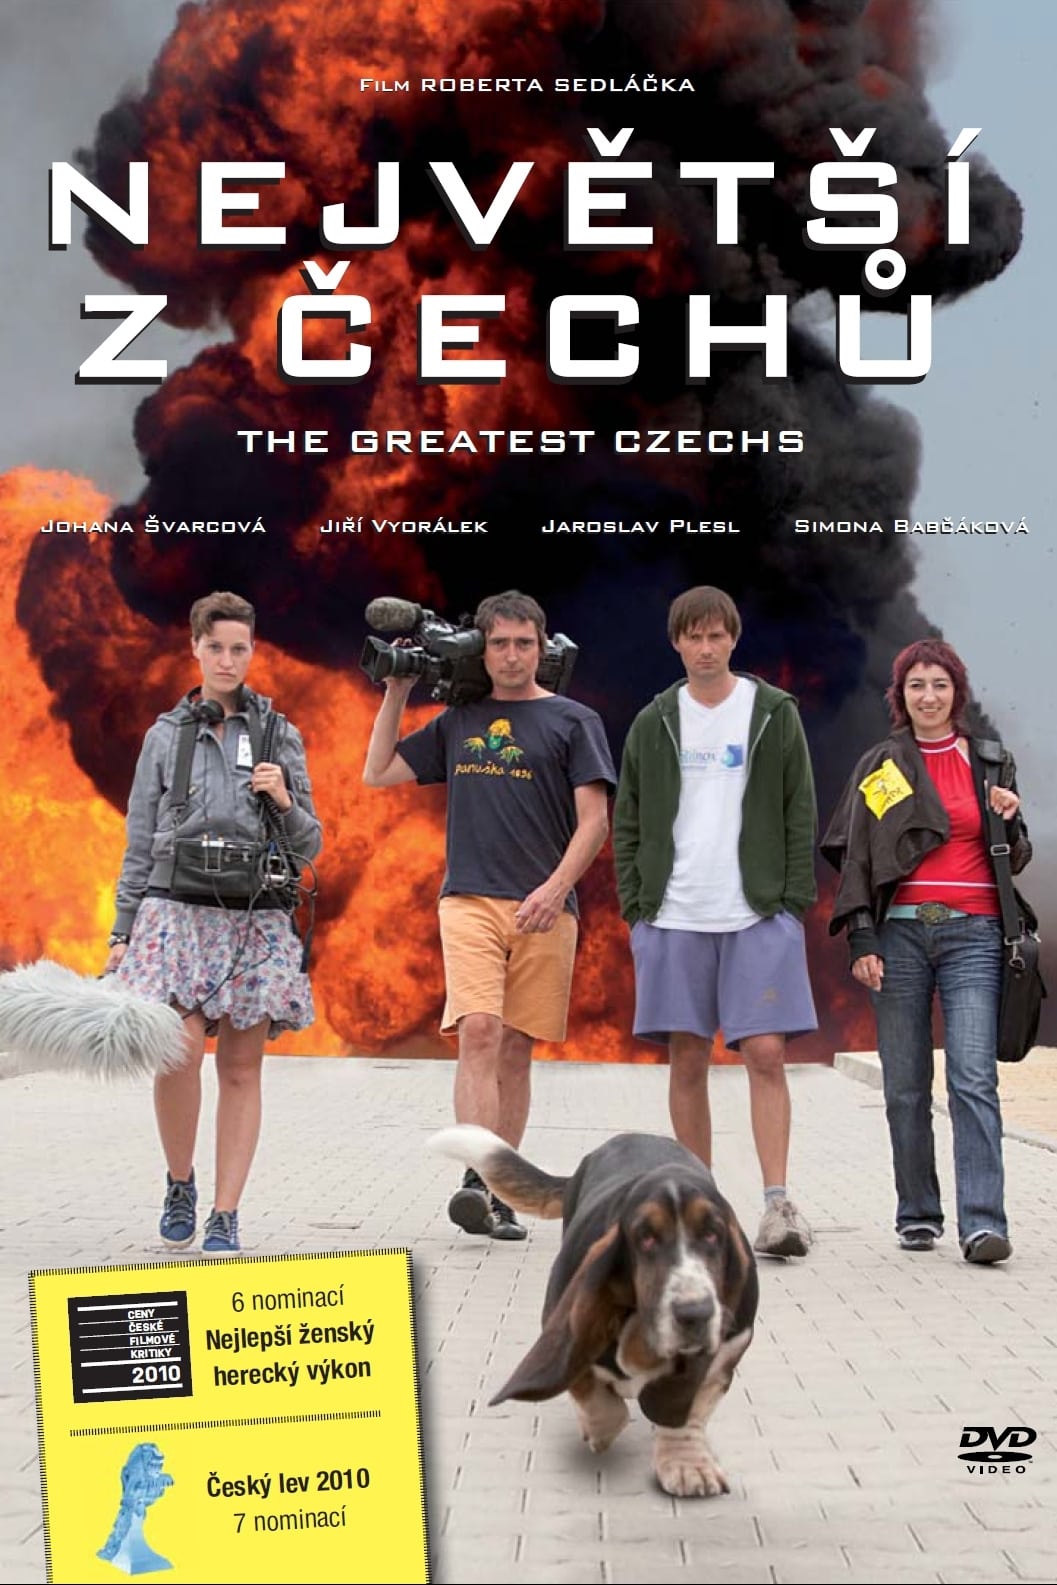 The Greatest Czechs (2010)